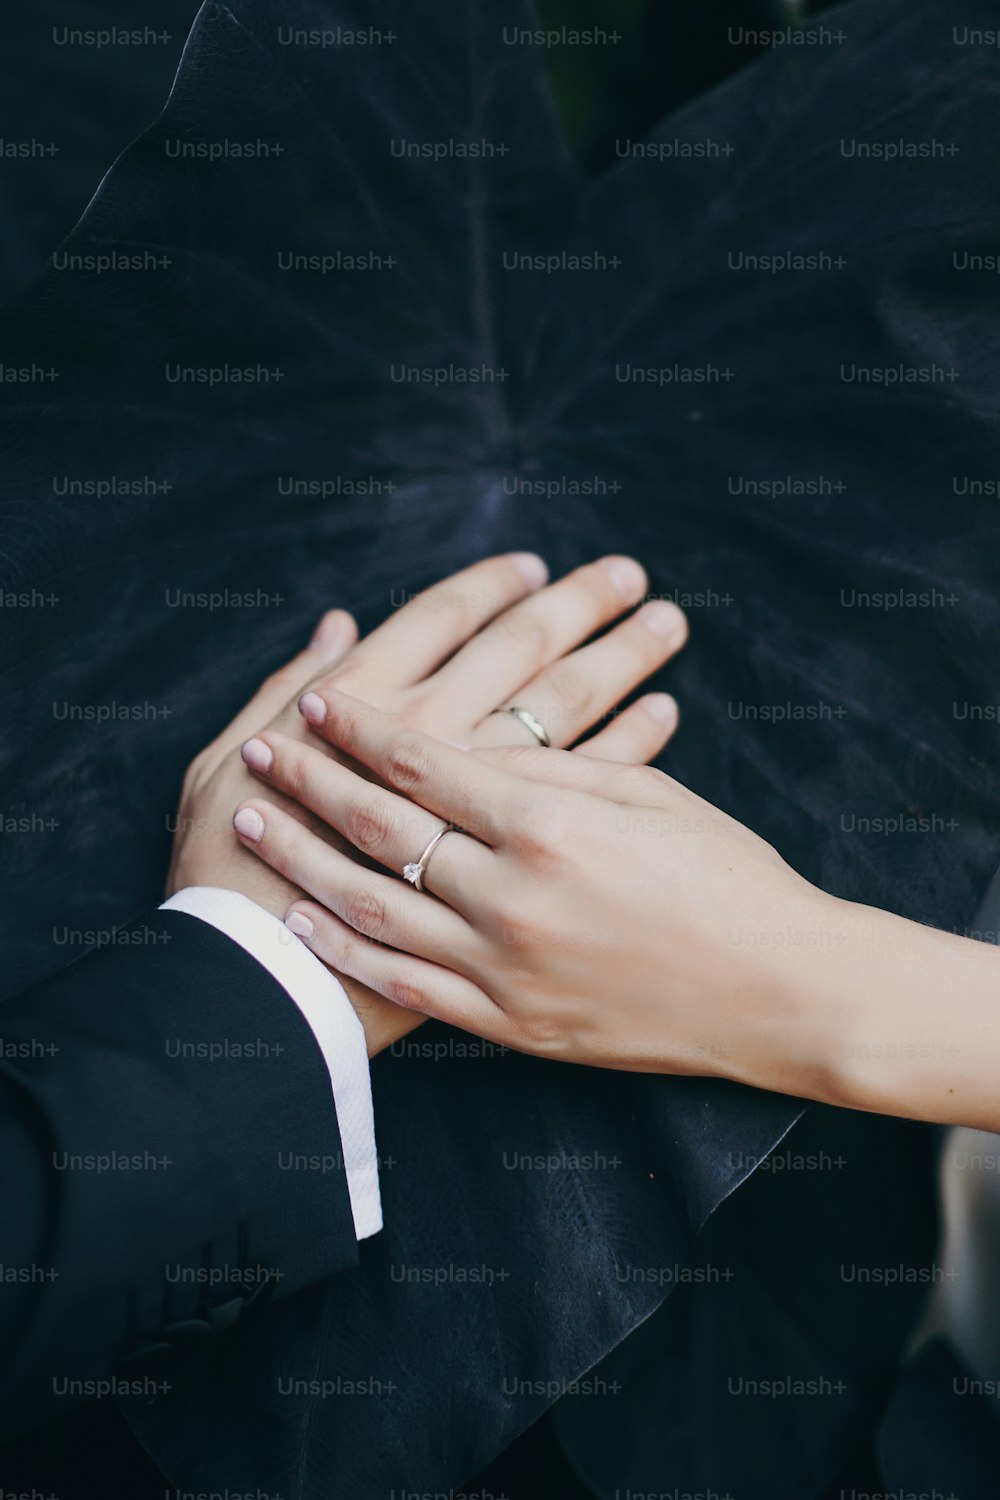 イタリアの植物園でスタイリッシュな新郎新婦が大きな黒い葉を手に、クリエイティブな結婚式の写真。Colocasia esculenta黒魔術の黒い葉に結婚指輪と手をつないでいるカップル